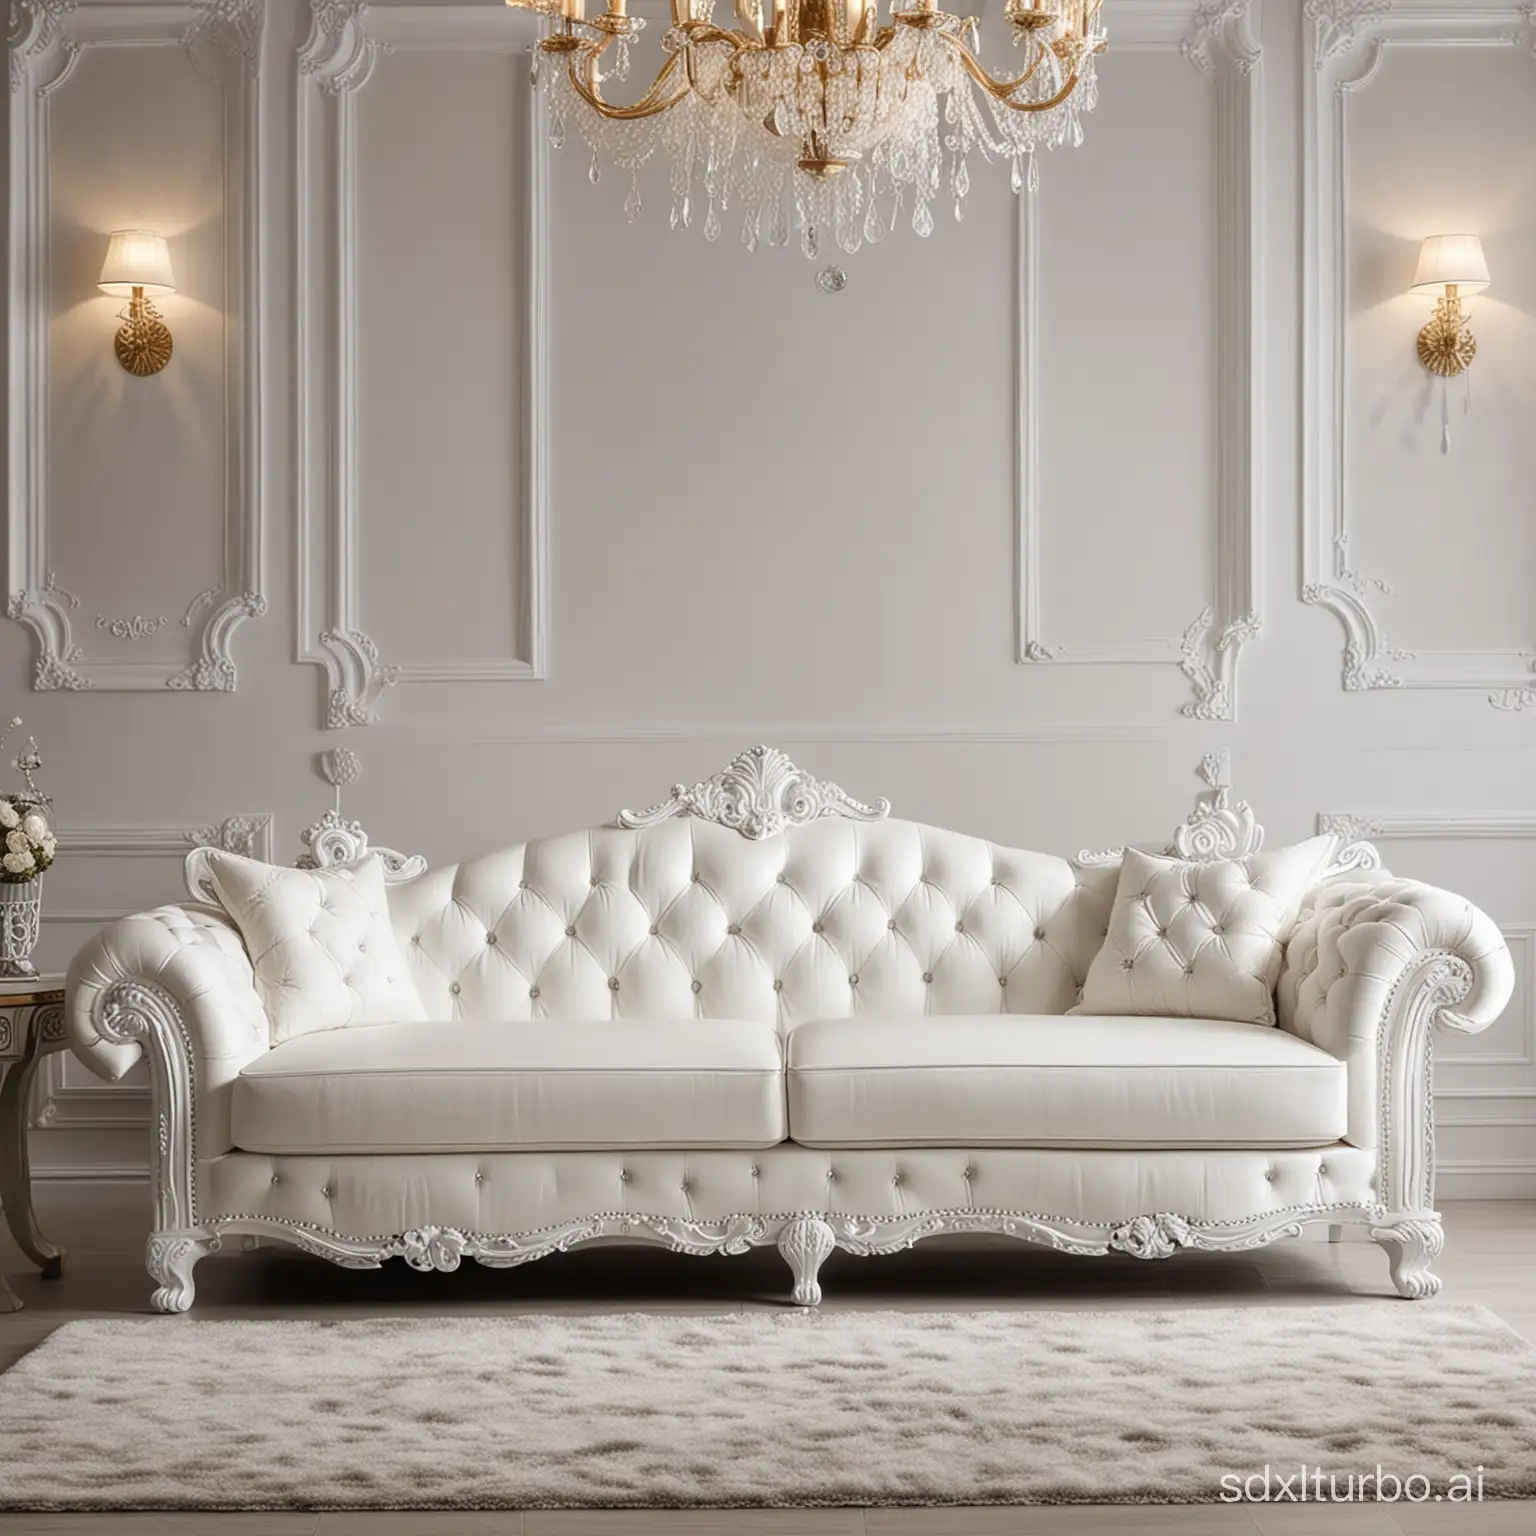 Sofa luxury royal white